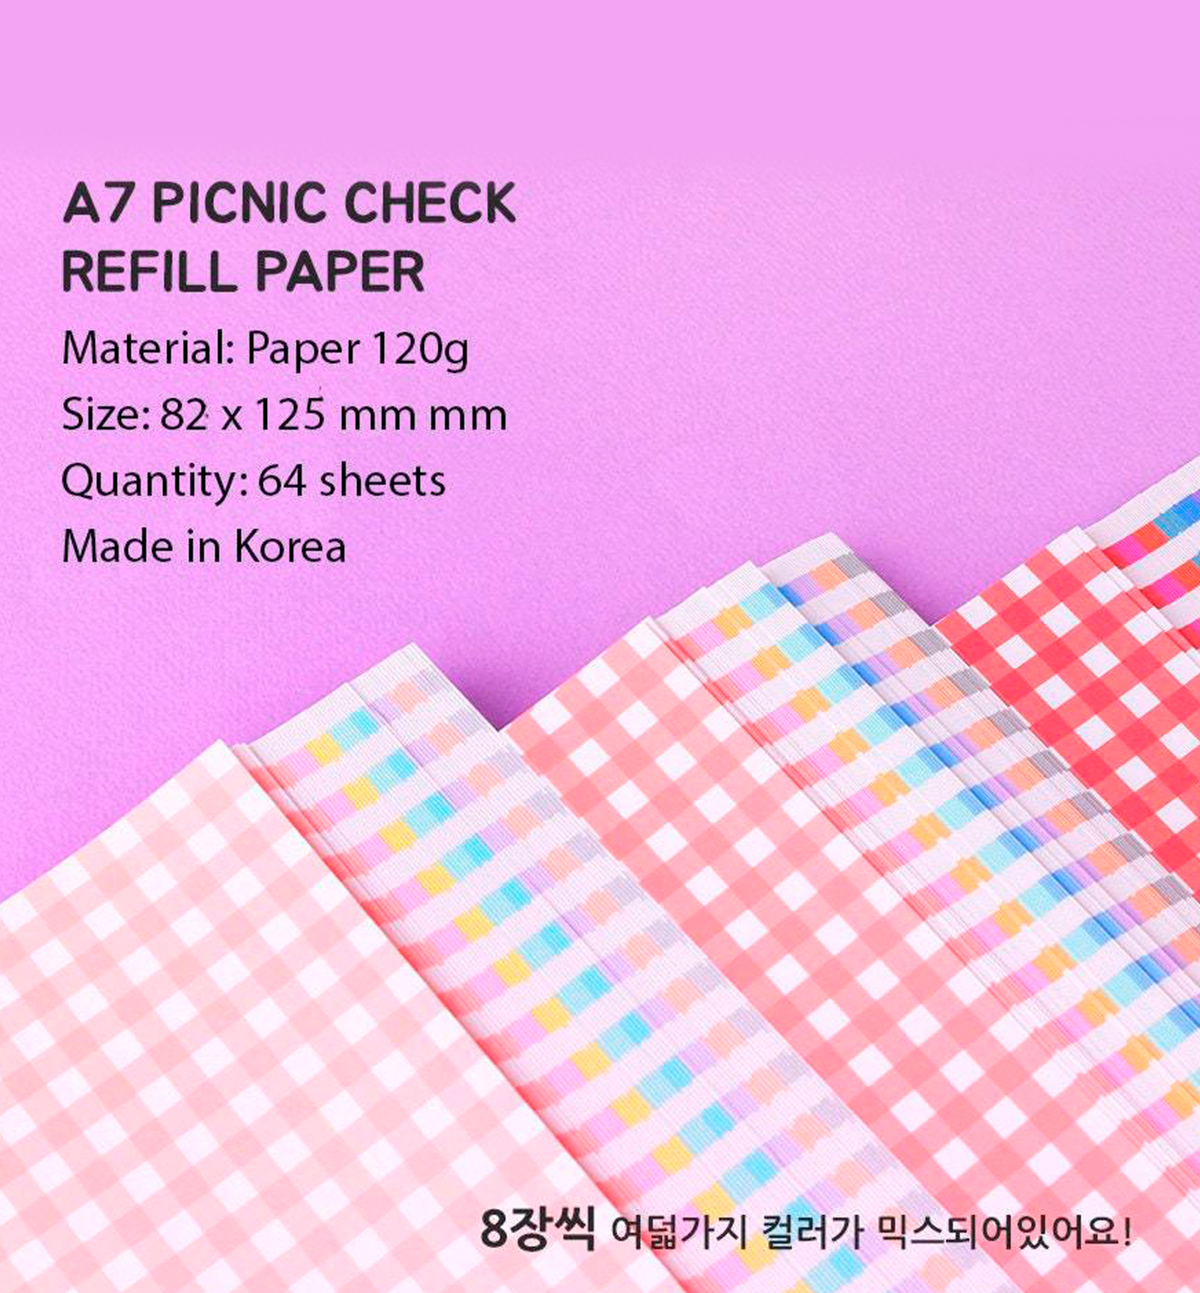 A7 Picnic Check Refill Paper